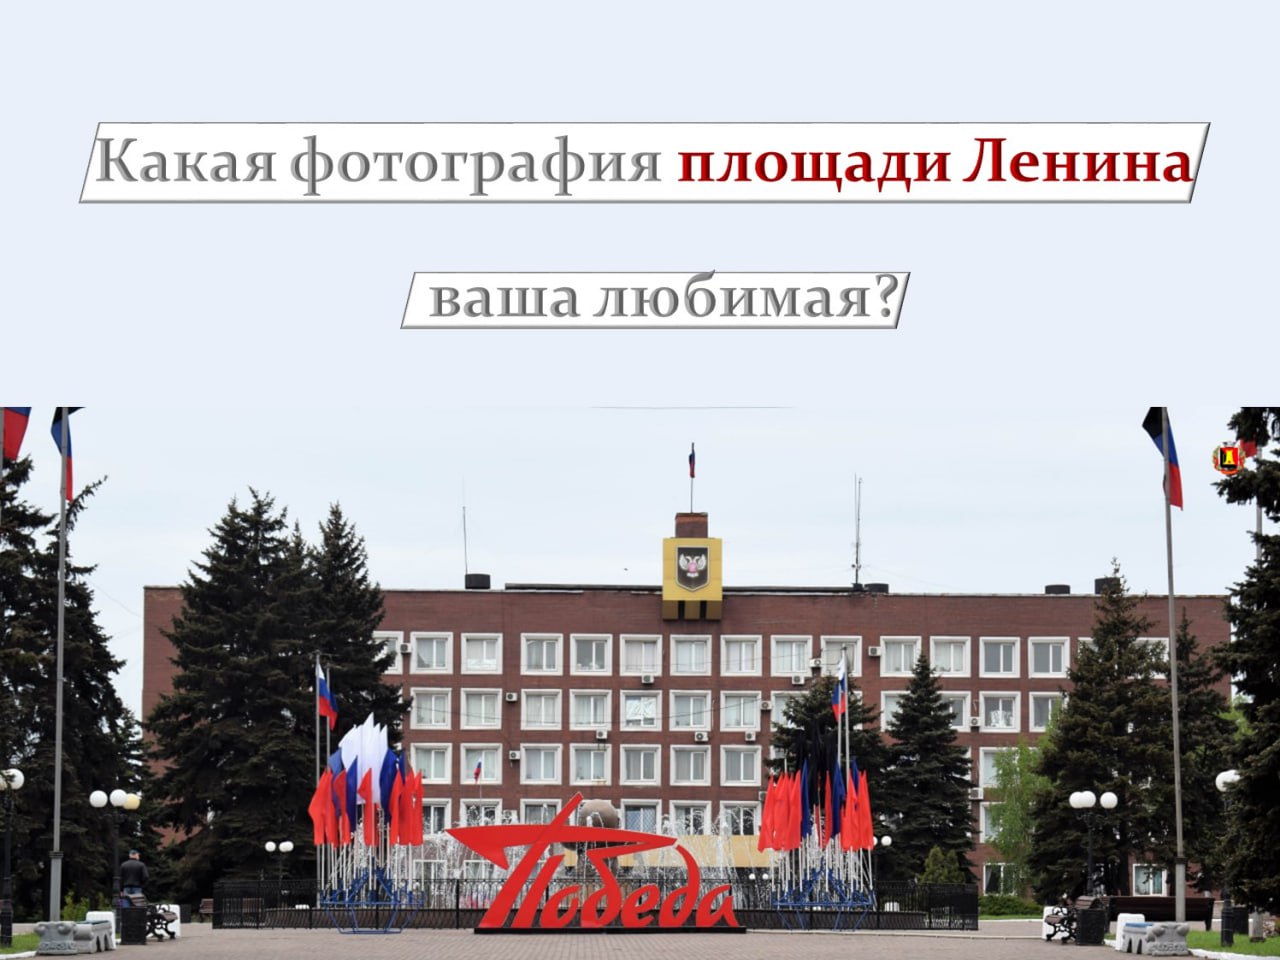 Какая фотография площади Ленина ваша любимая?.